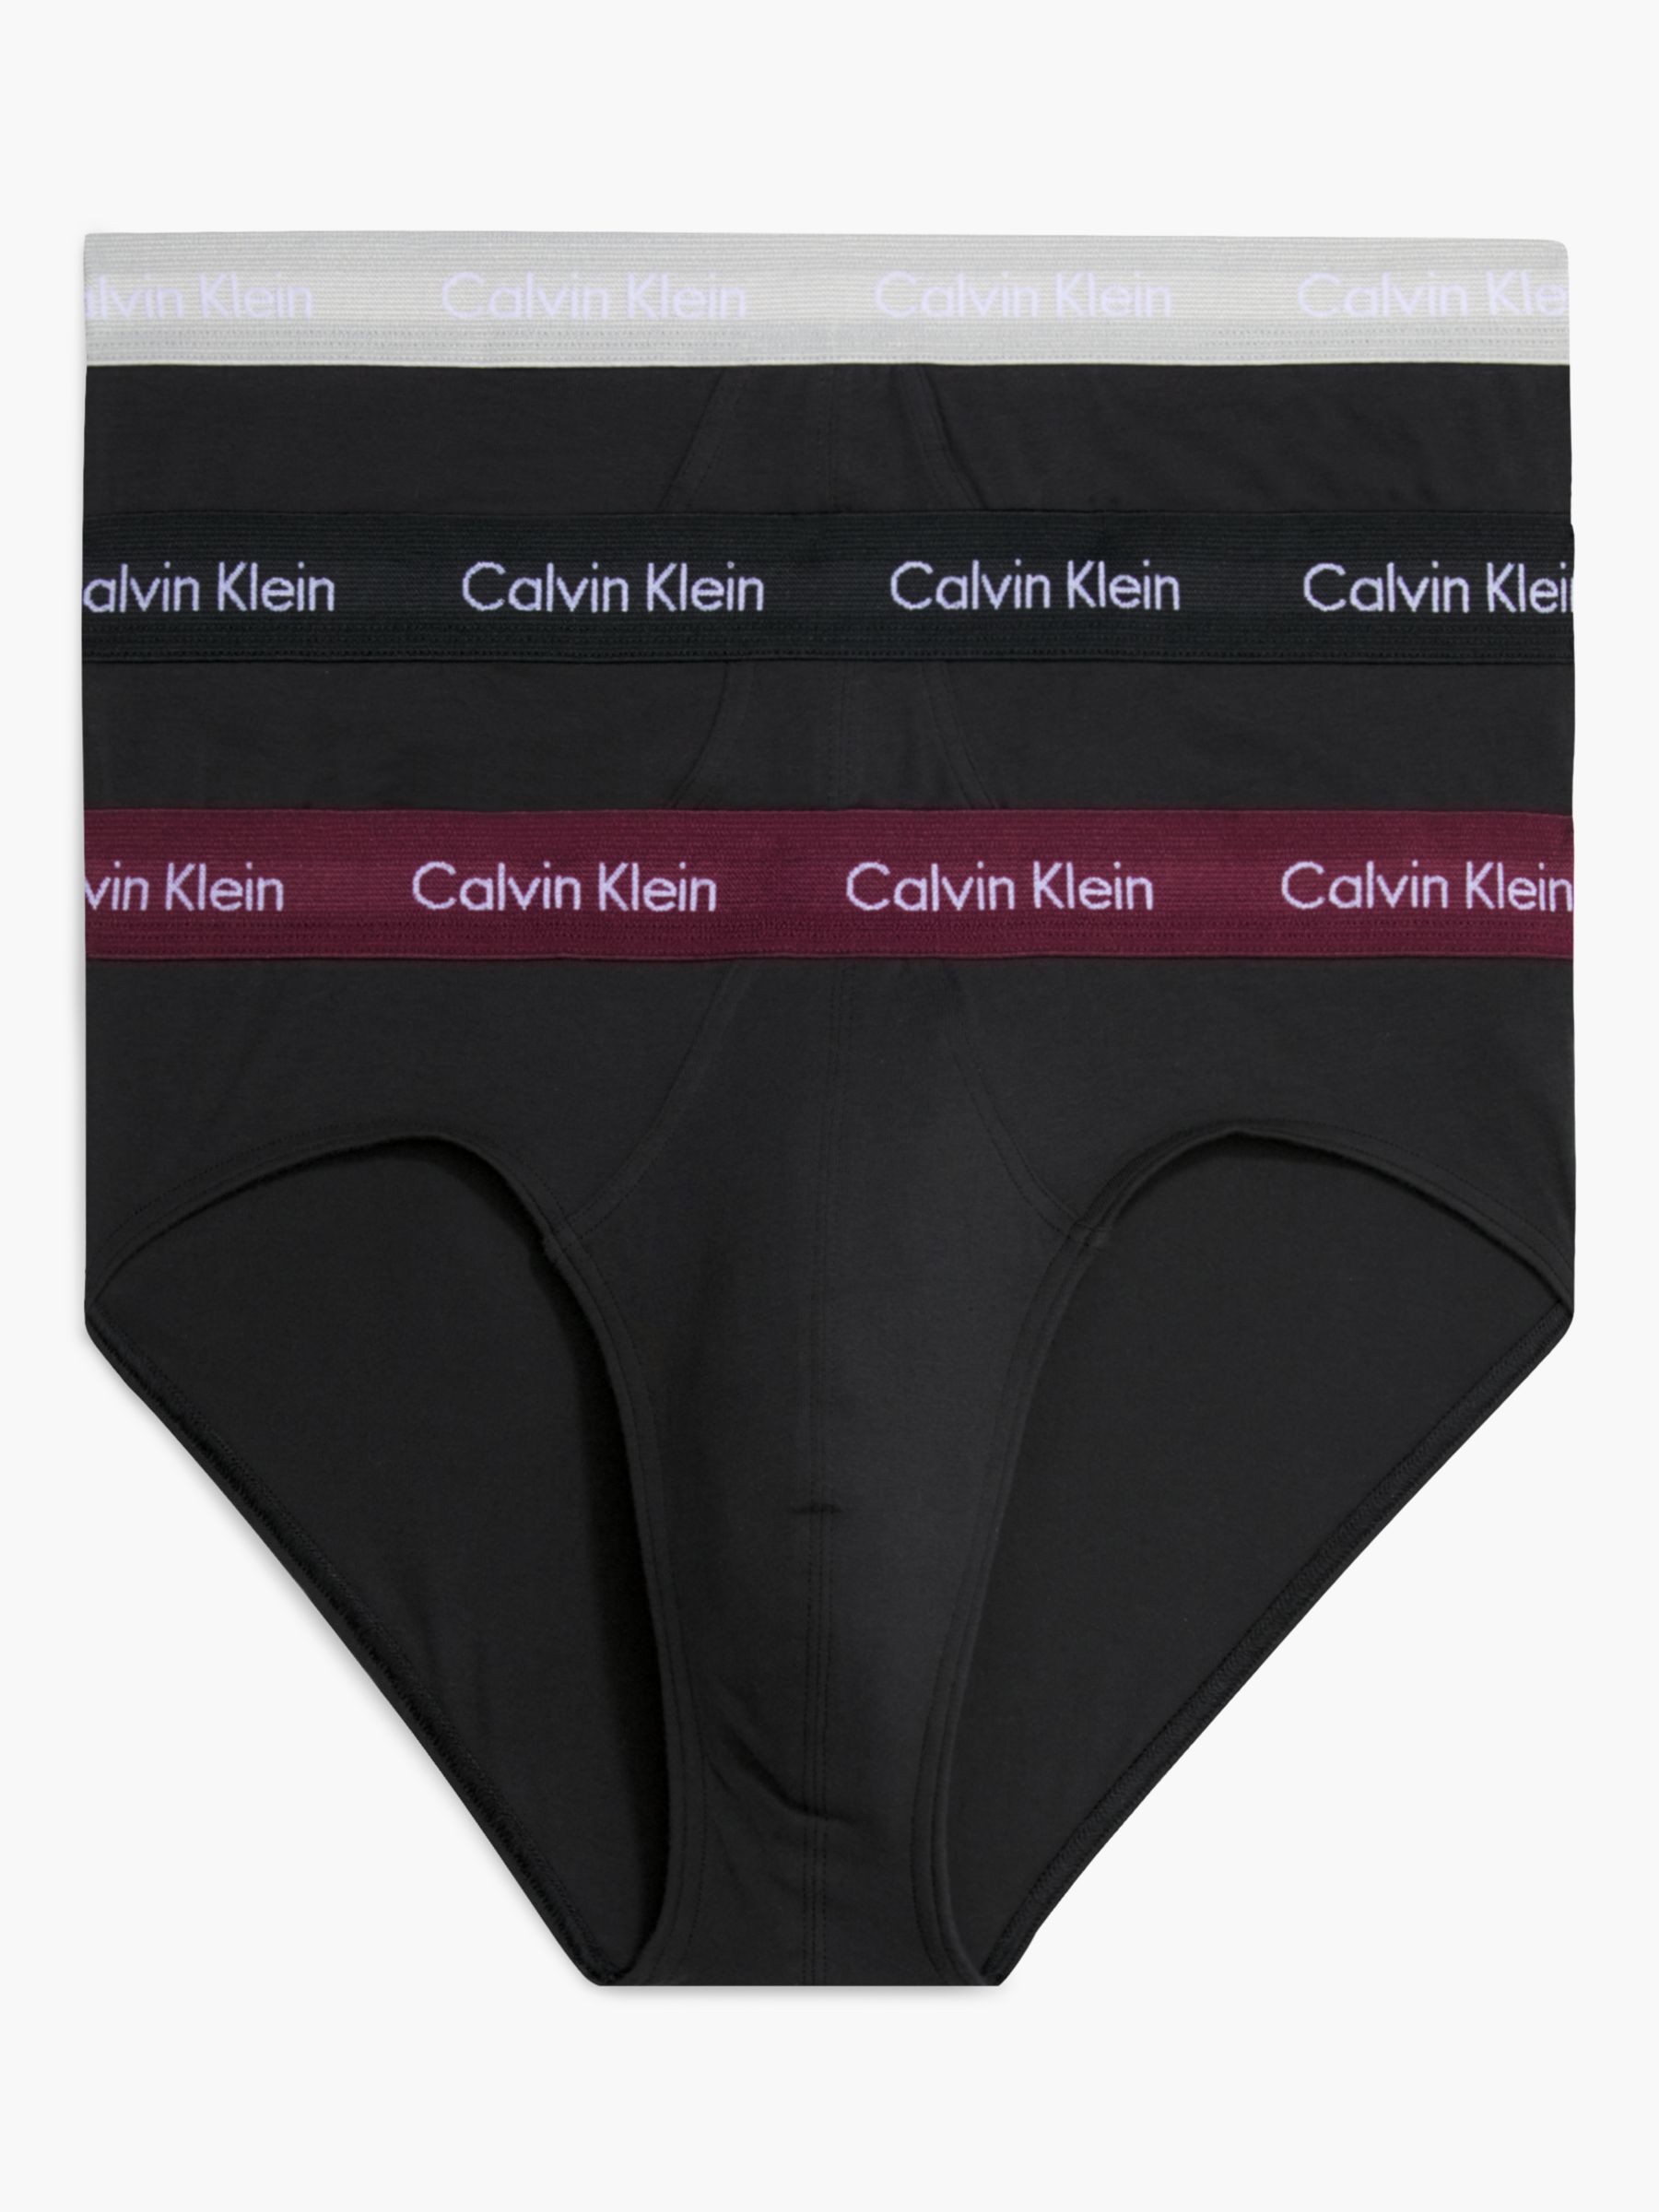 Calvin Klein 7 Pack Ck One Hip Briefs in Black for Men